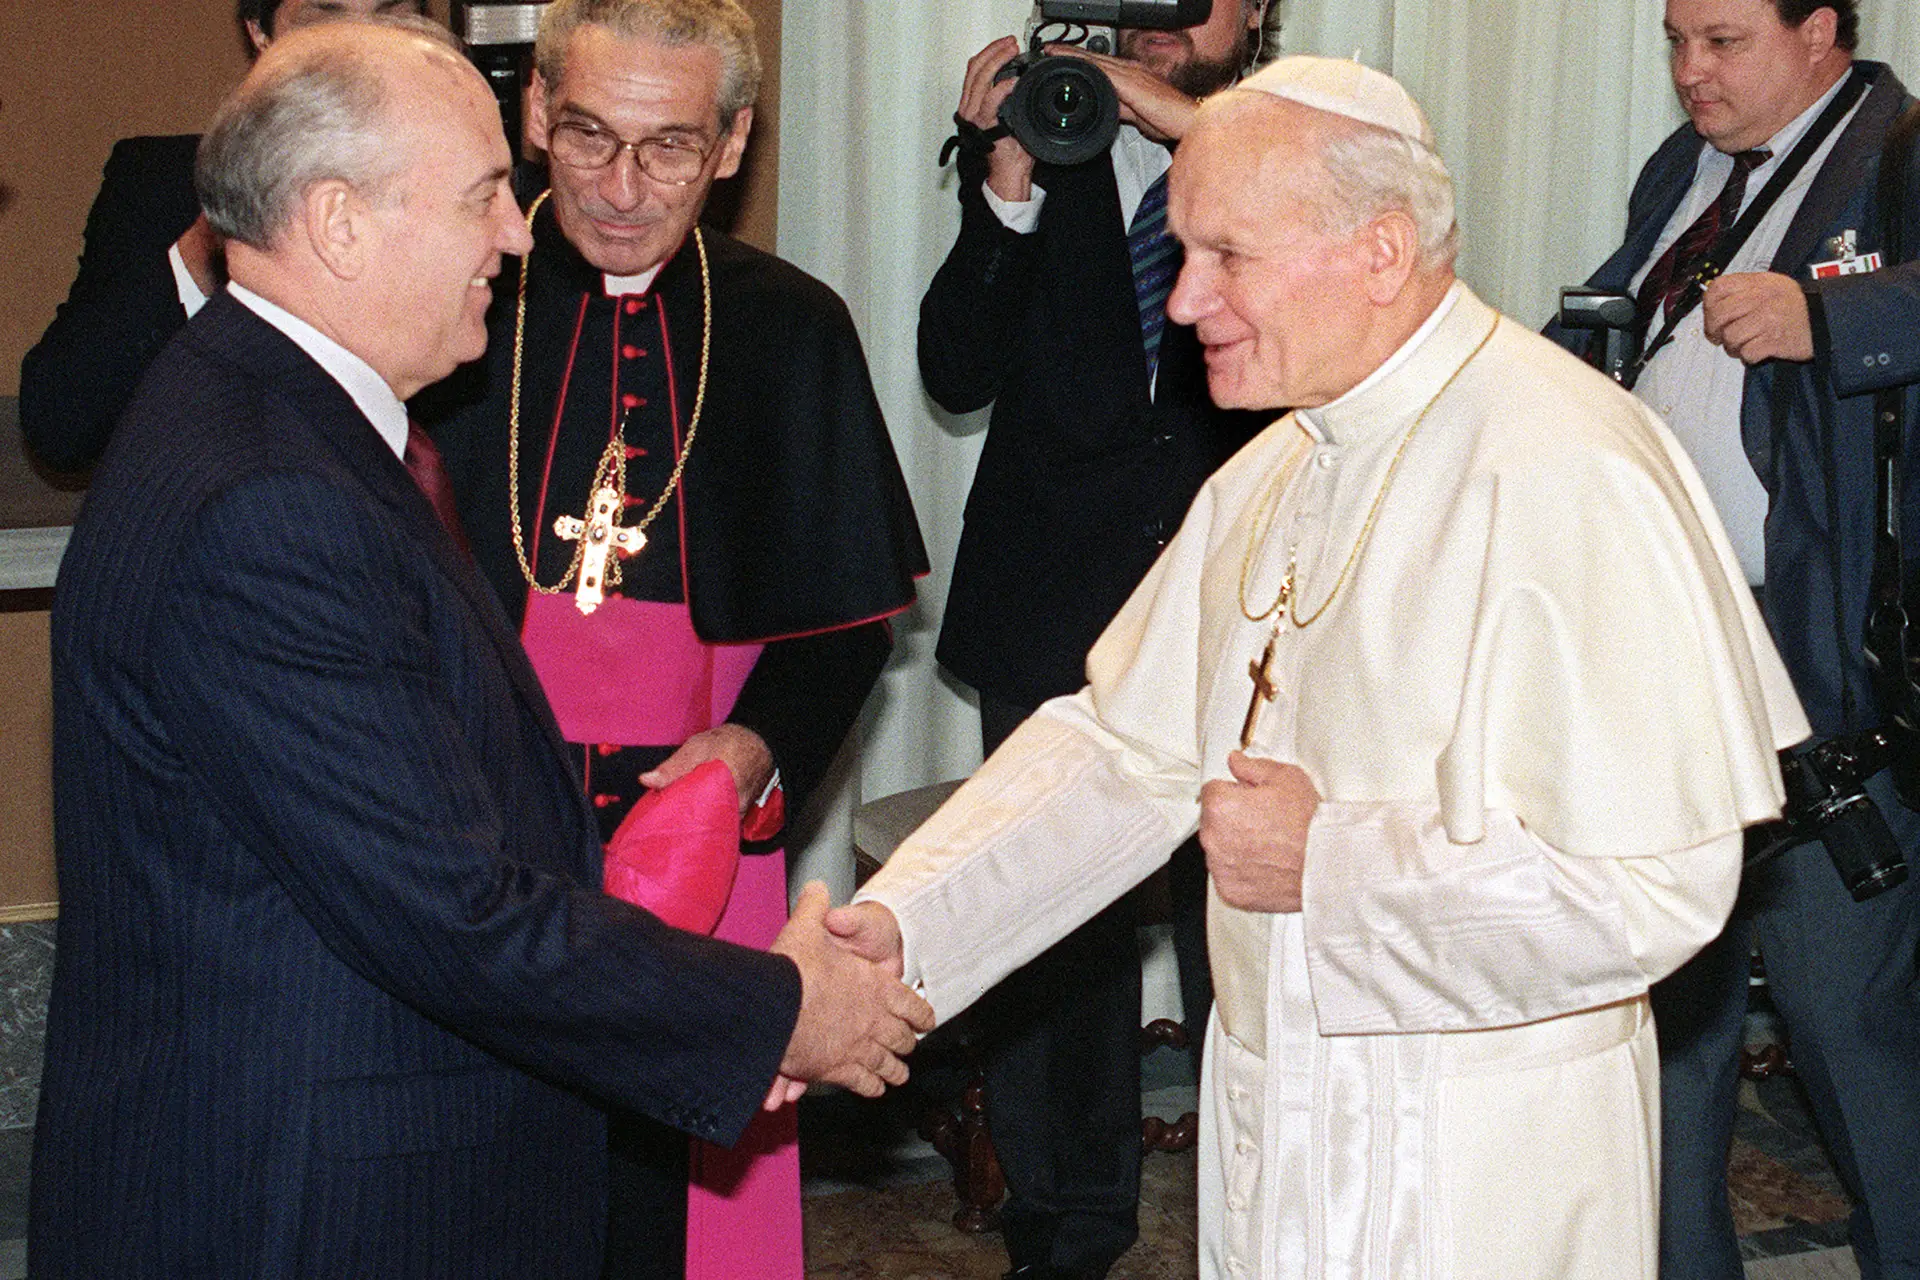 HISTÓRIA. Um dos momentos mais importantes da liderança de Gorbachev foi a sua deslocação ao Vaticano, em 1989, para um encontro com João Paulo II, o primeiro de um líder soviético com um chefe da igreja católica. Ao Papa polaco atribui-se importância na queda do comunismo na Europa de Leste